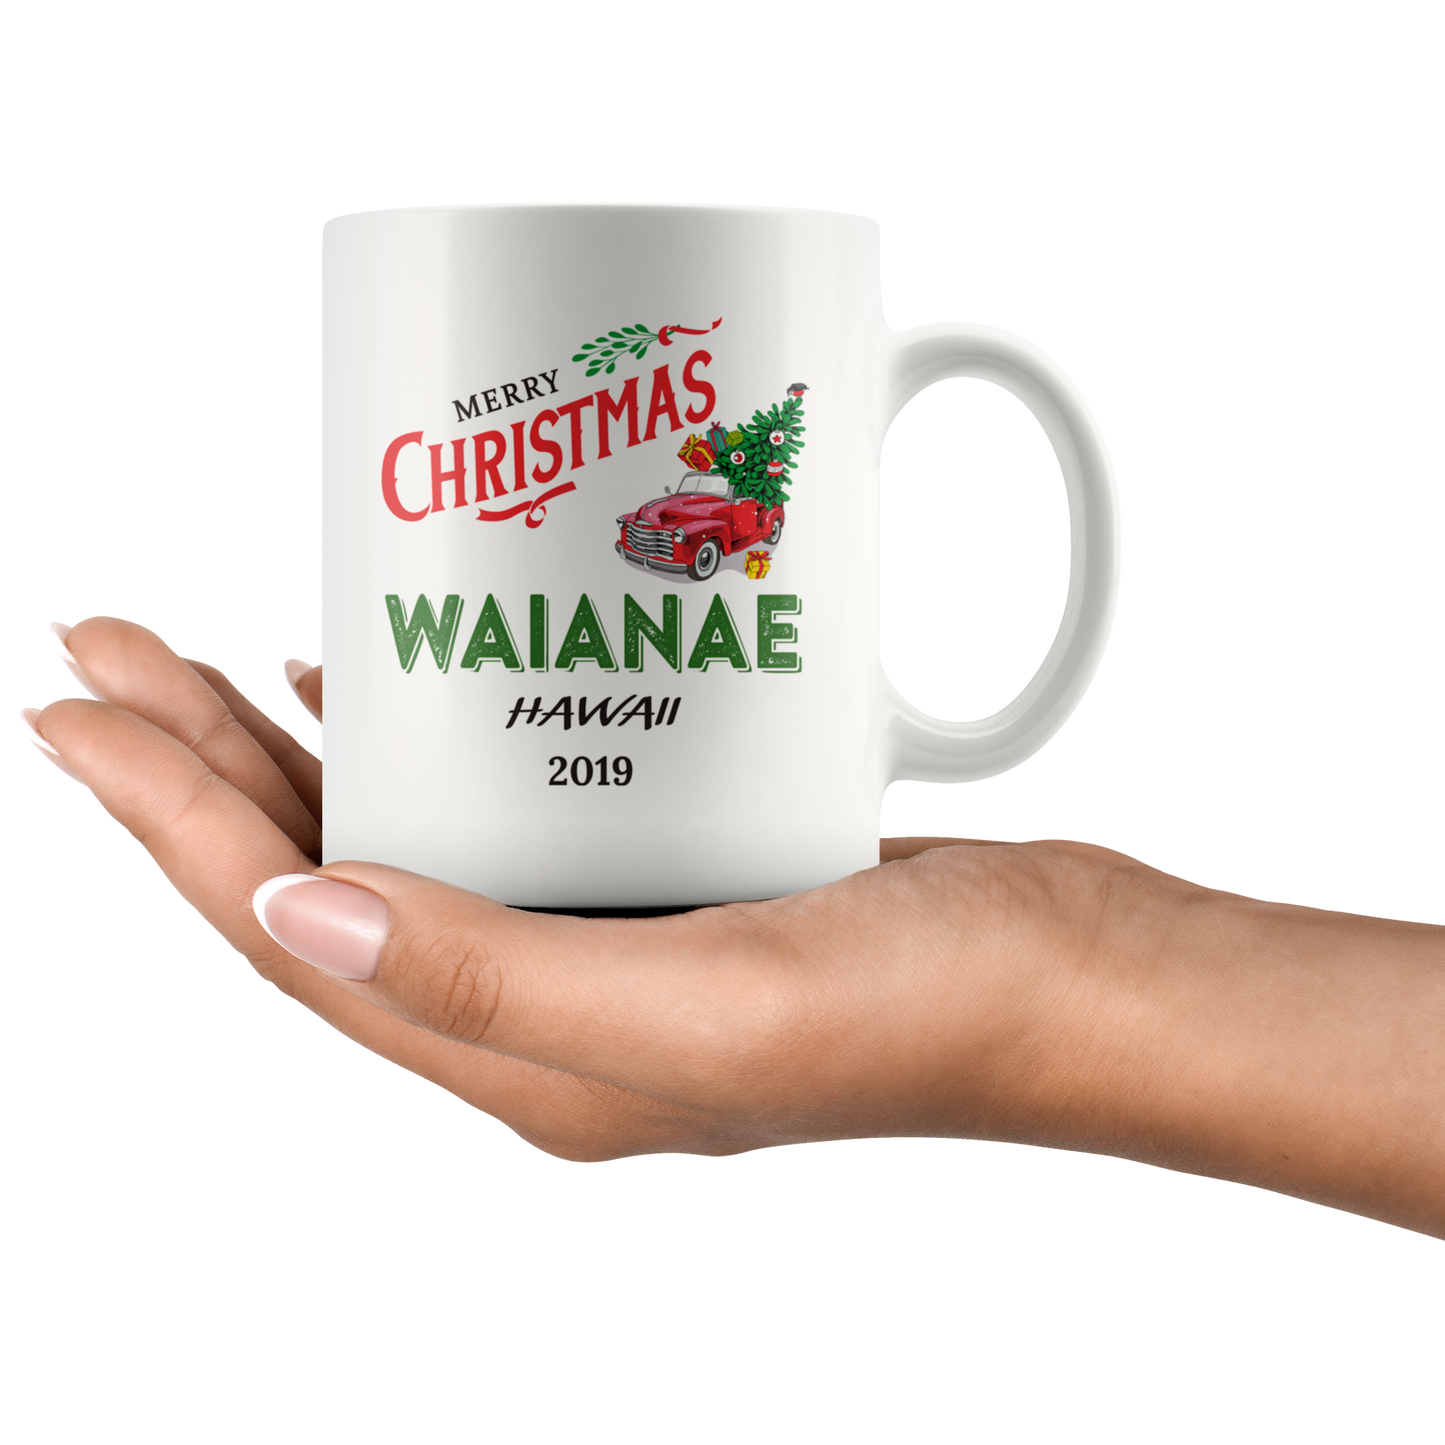 ND20747381-sp-16845 - Tis The Season Christmas Mug - Christmas Mug 2019 Waianae Ha